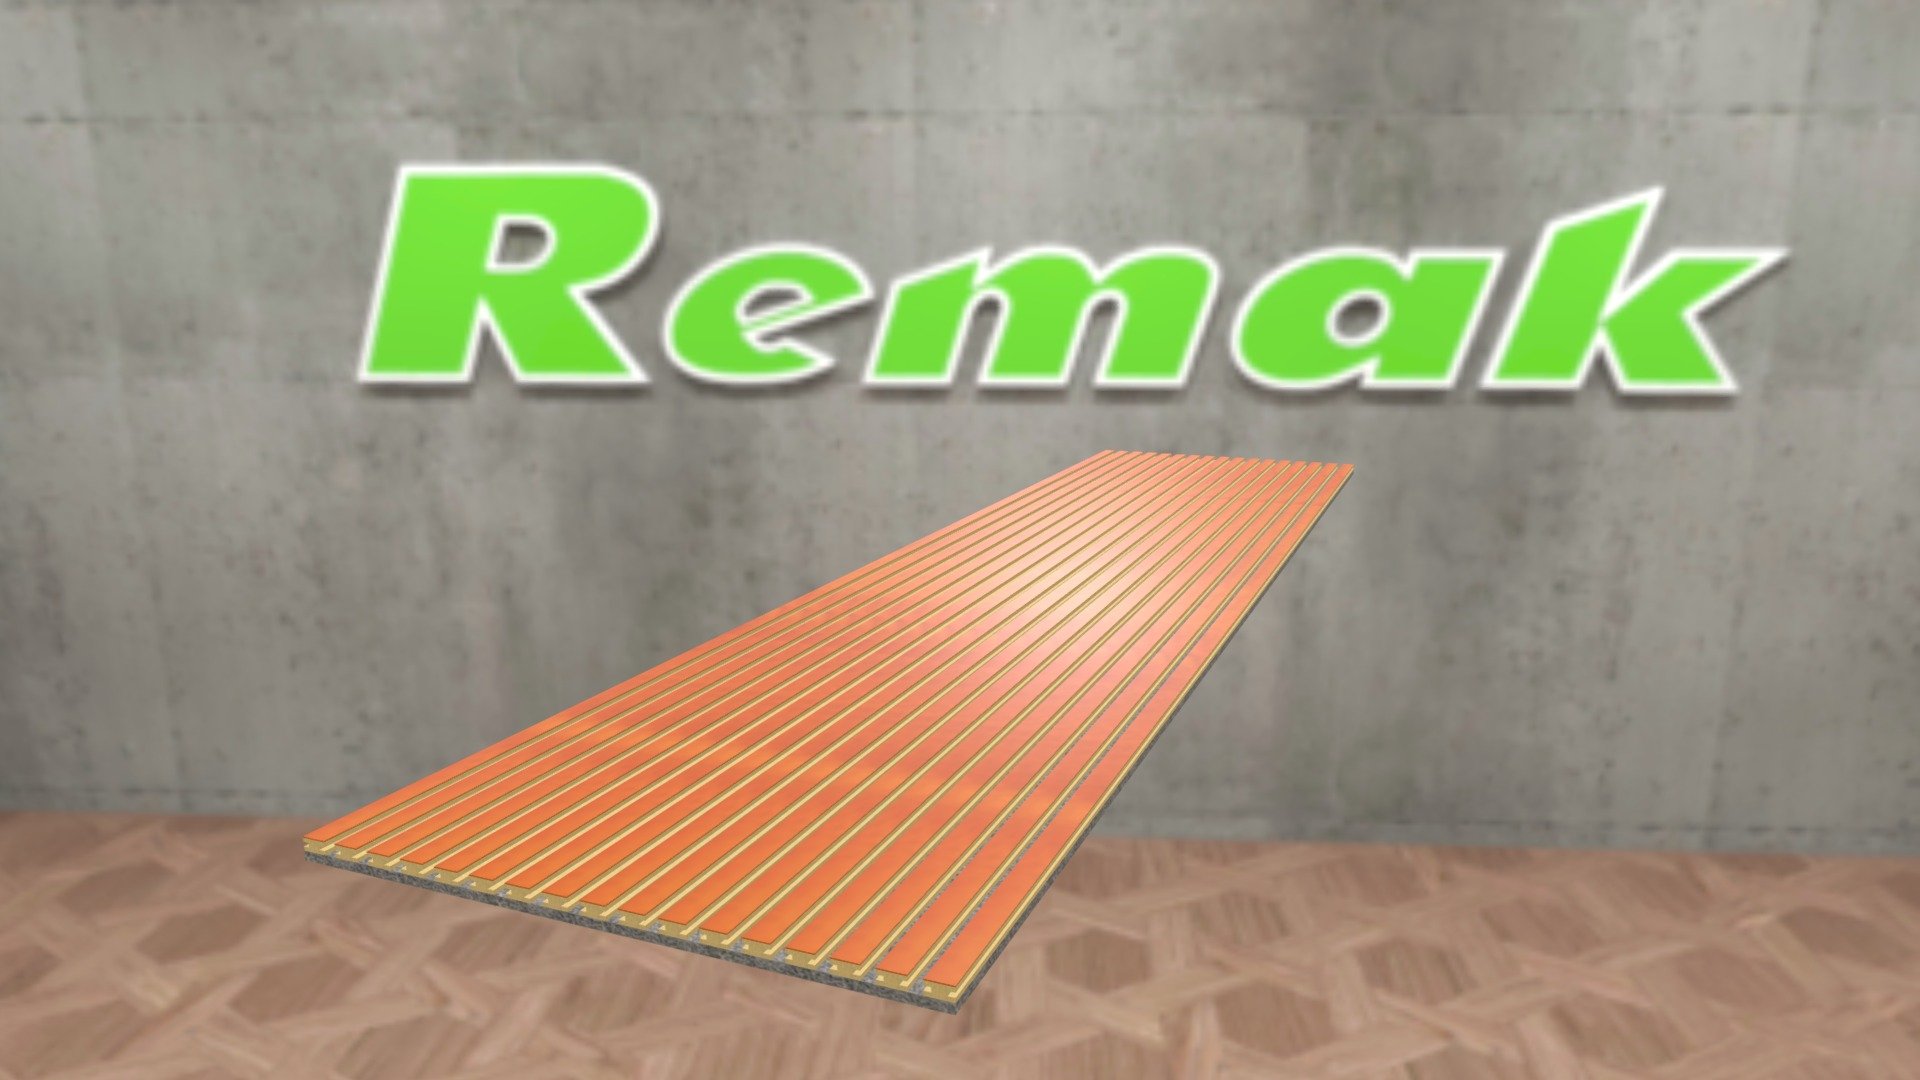 Acoustic Slats wall panel - 3D model by Remak 3d model